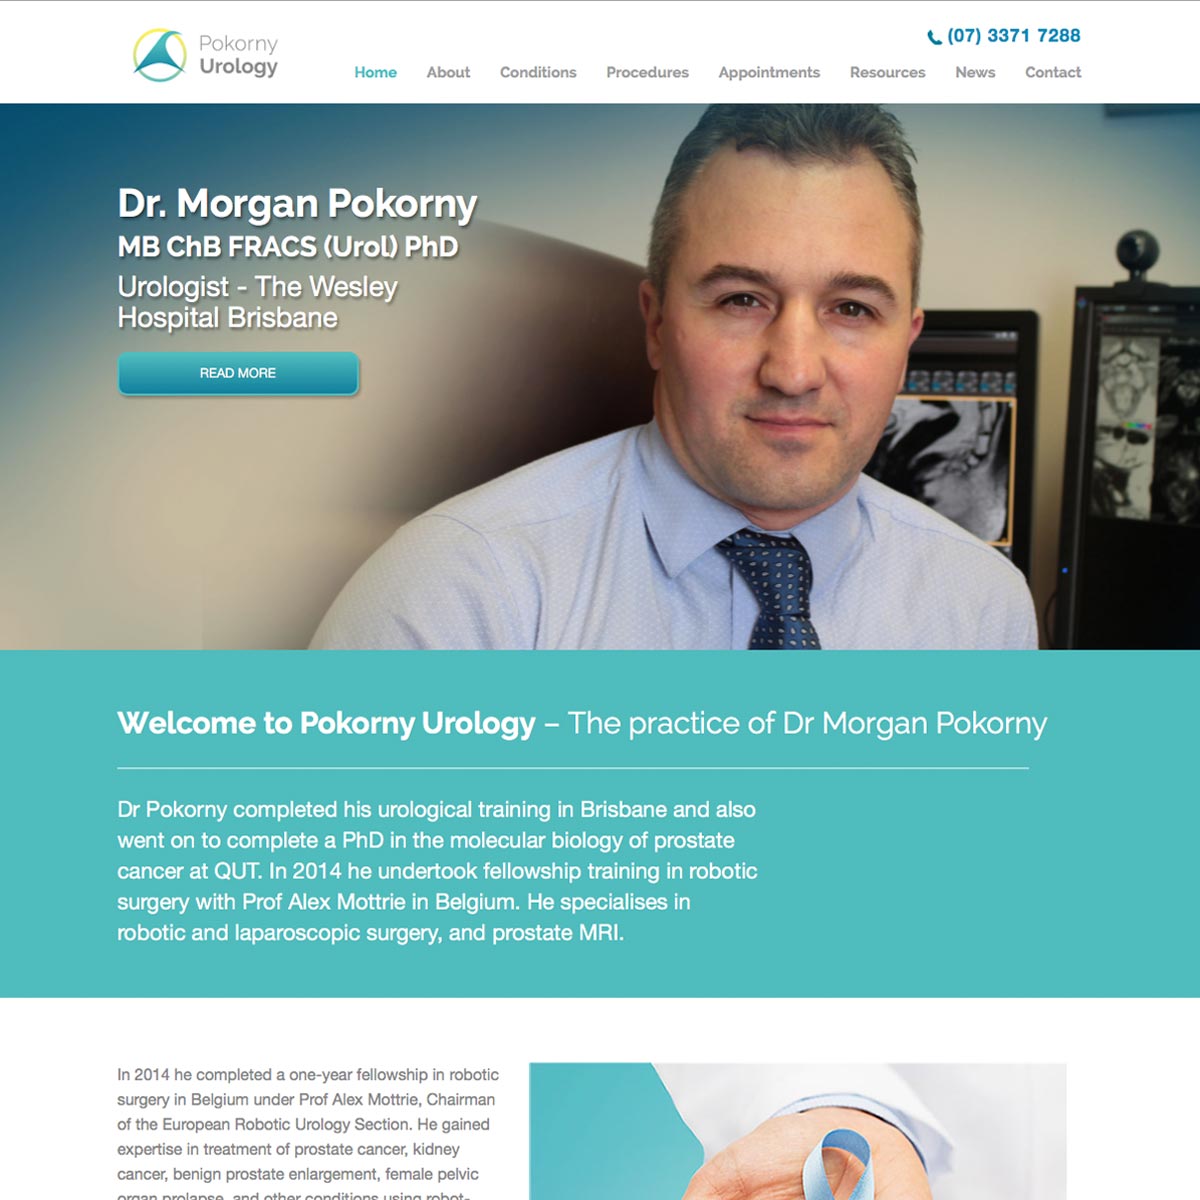 Pokorny Urology Home Page